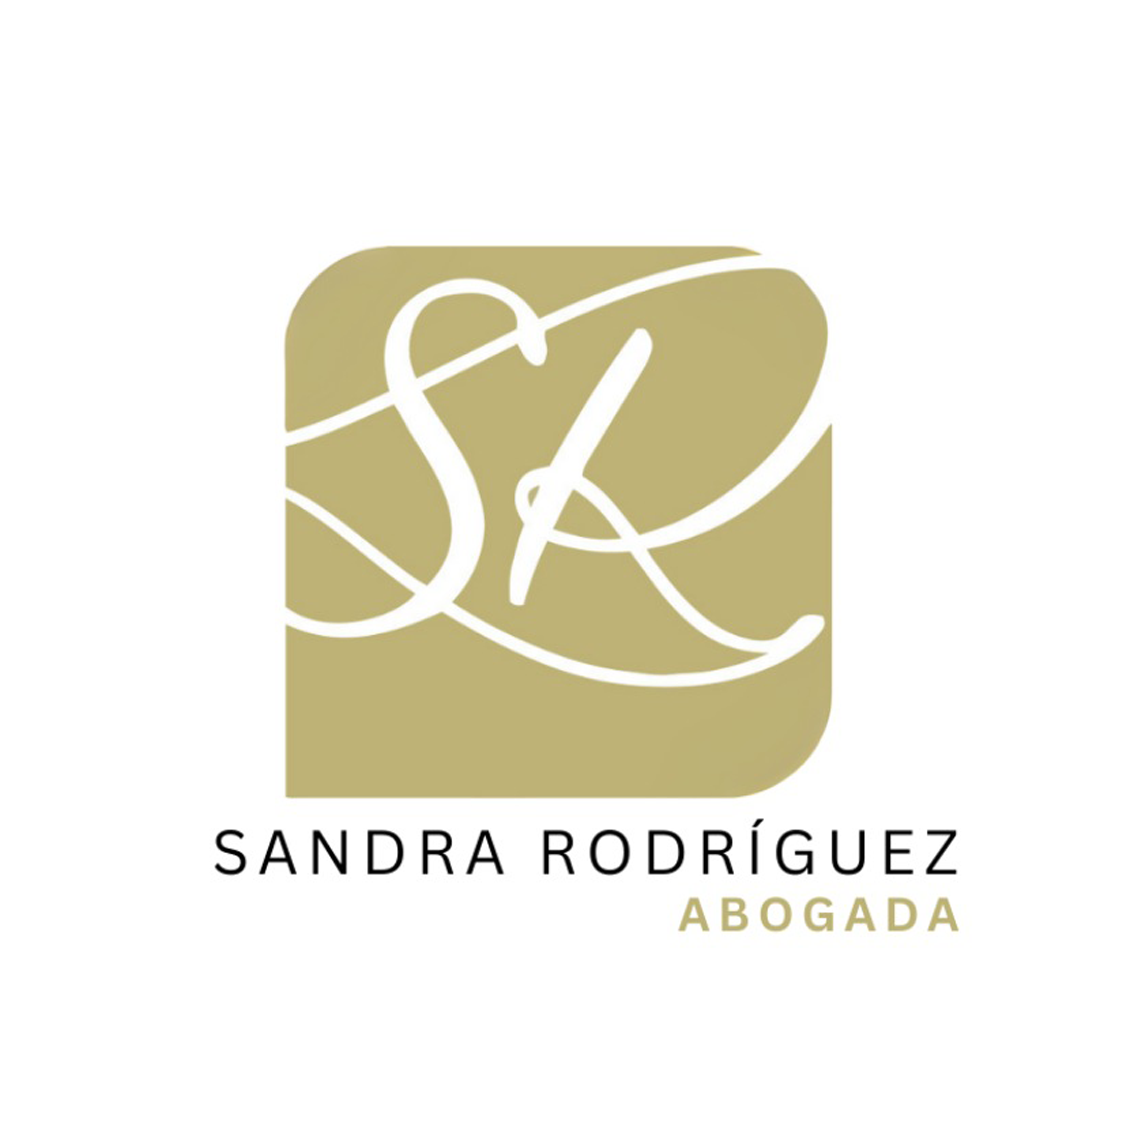 Sandra Rodríguez Fernández, abogada colegiada 6484 del ICAOVIEDO.. CUETO GESTORES INMOBILIARIOS SL en Oviedo